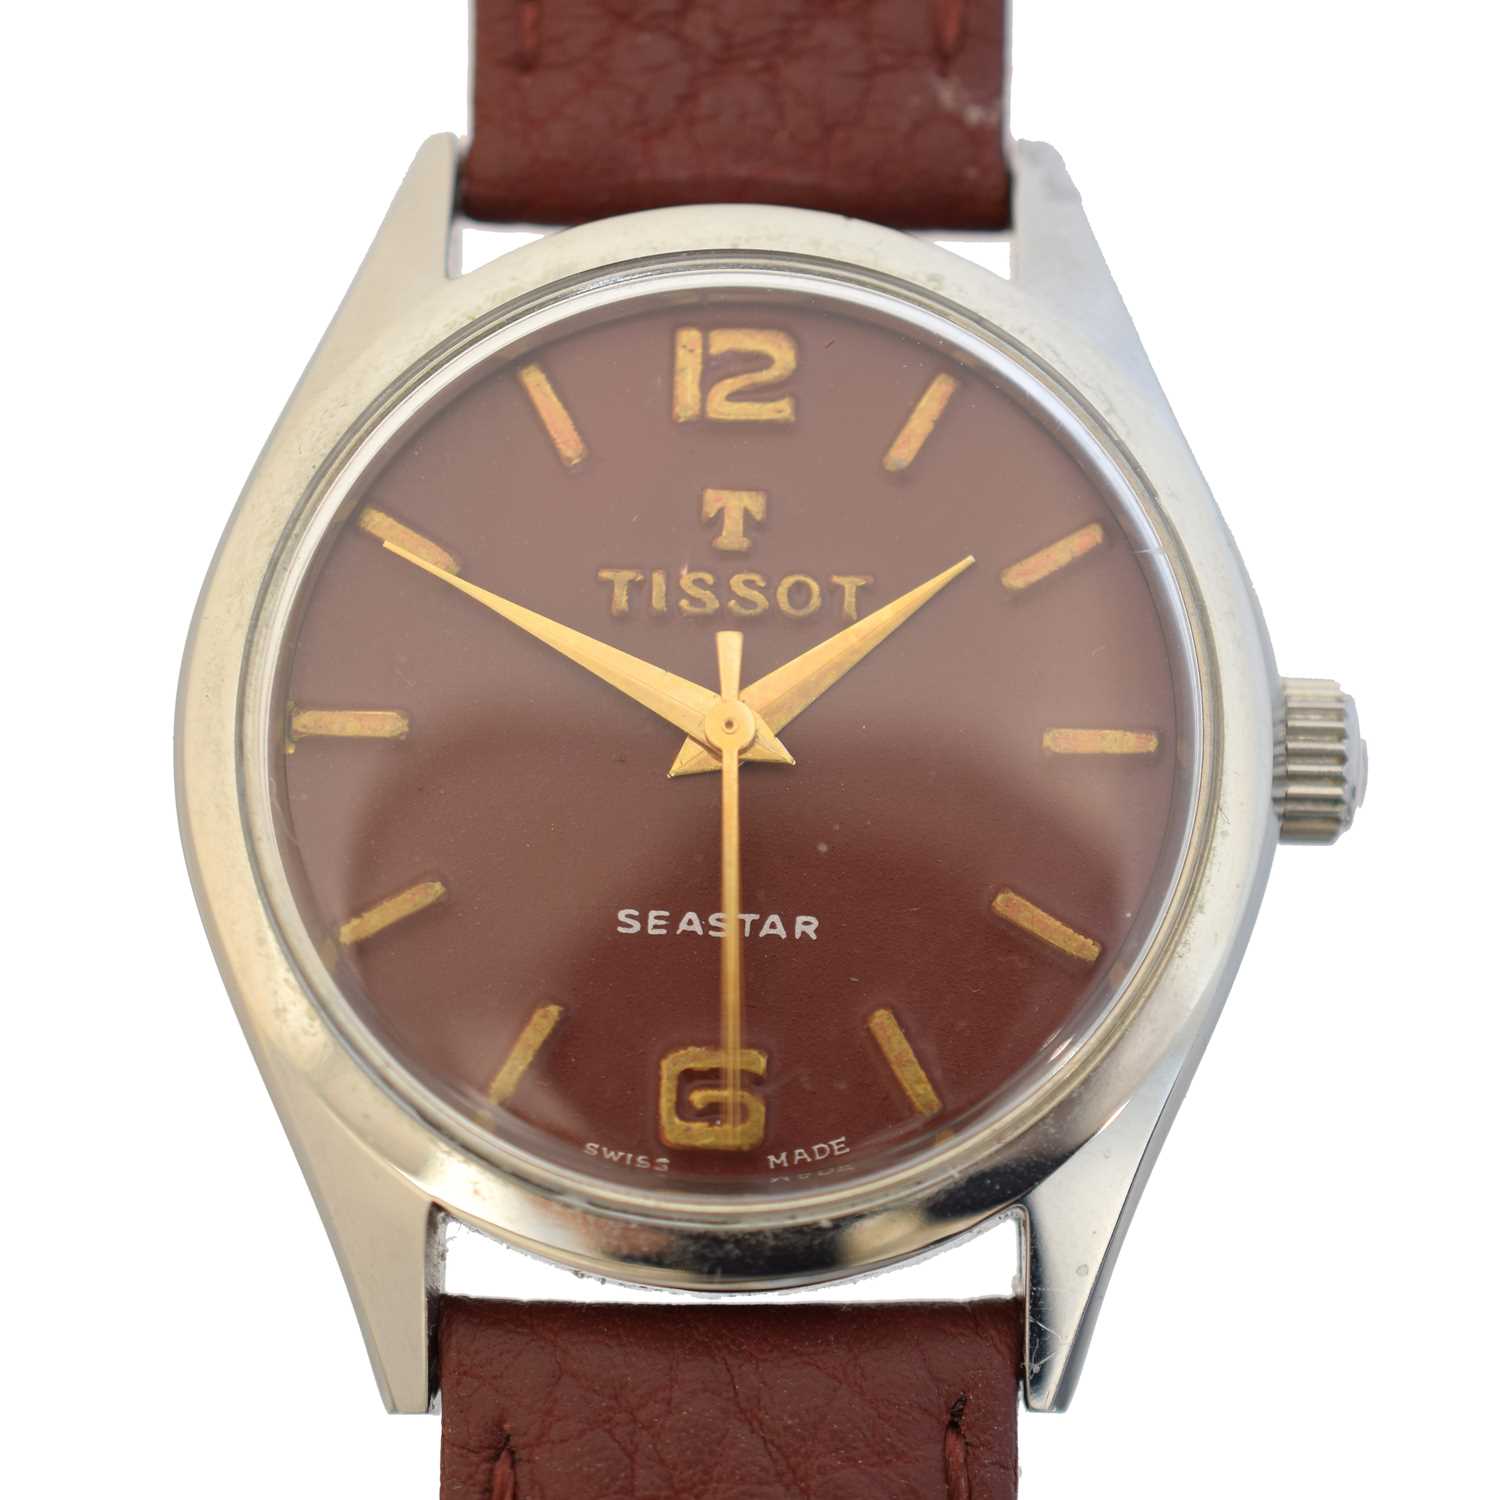 Lot A 1960s Tissot Seastar wristwatch